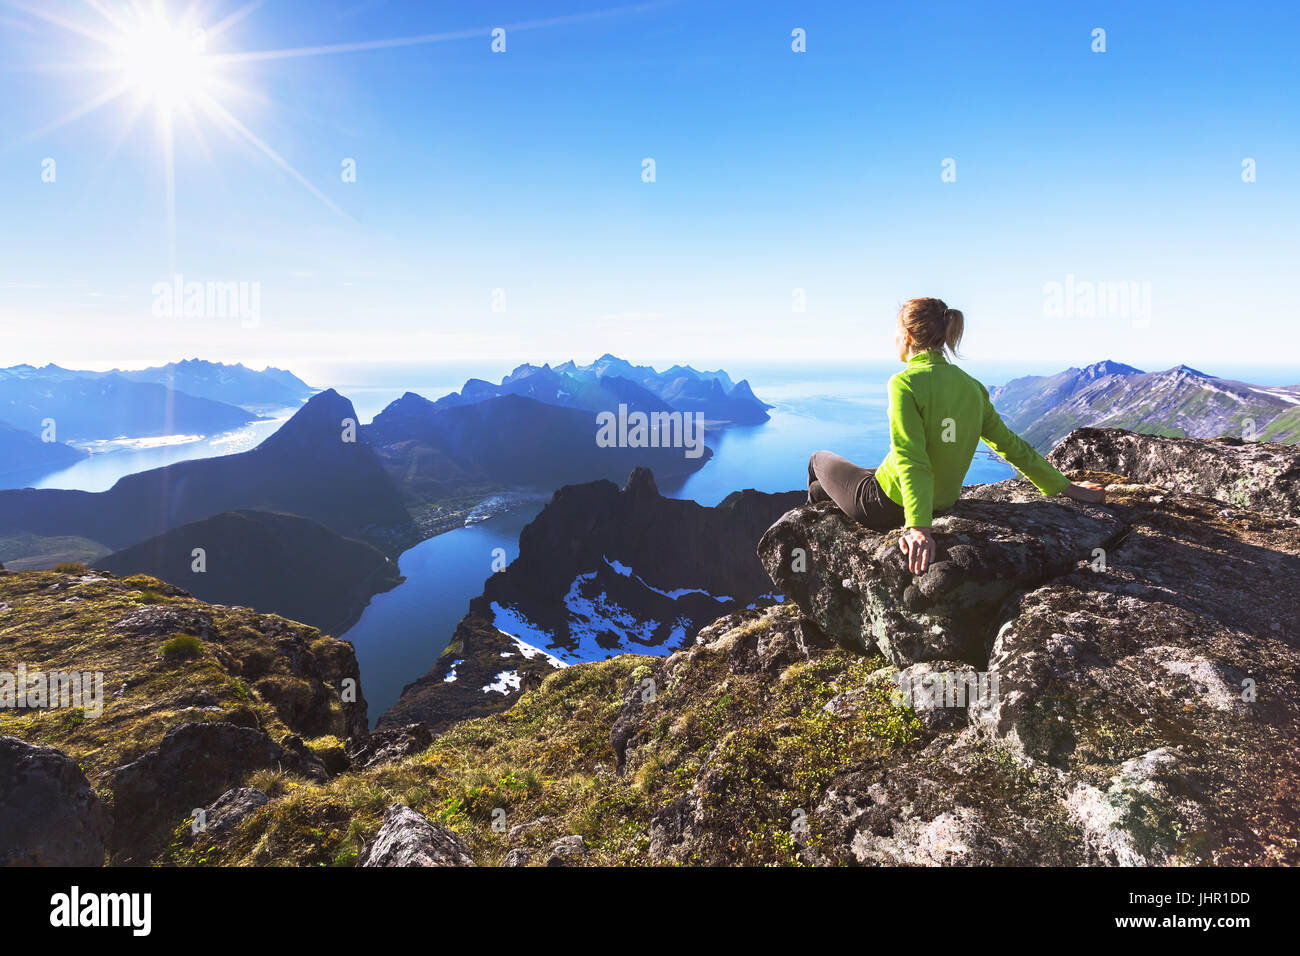 Mujer caminante descansando en la cima de la montaña y contemplando unas vistas increíbles de un fiordo noruego en la isla de Senja, norte de Noruega Foto de stock